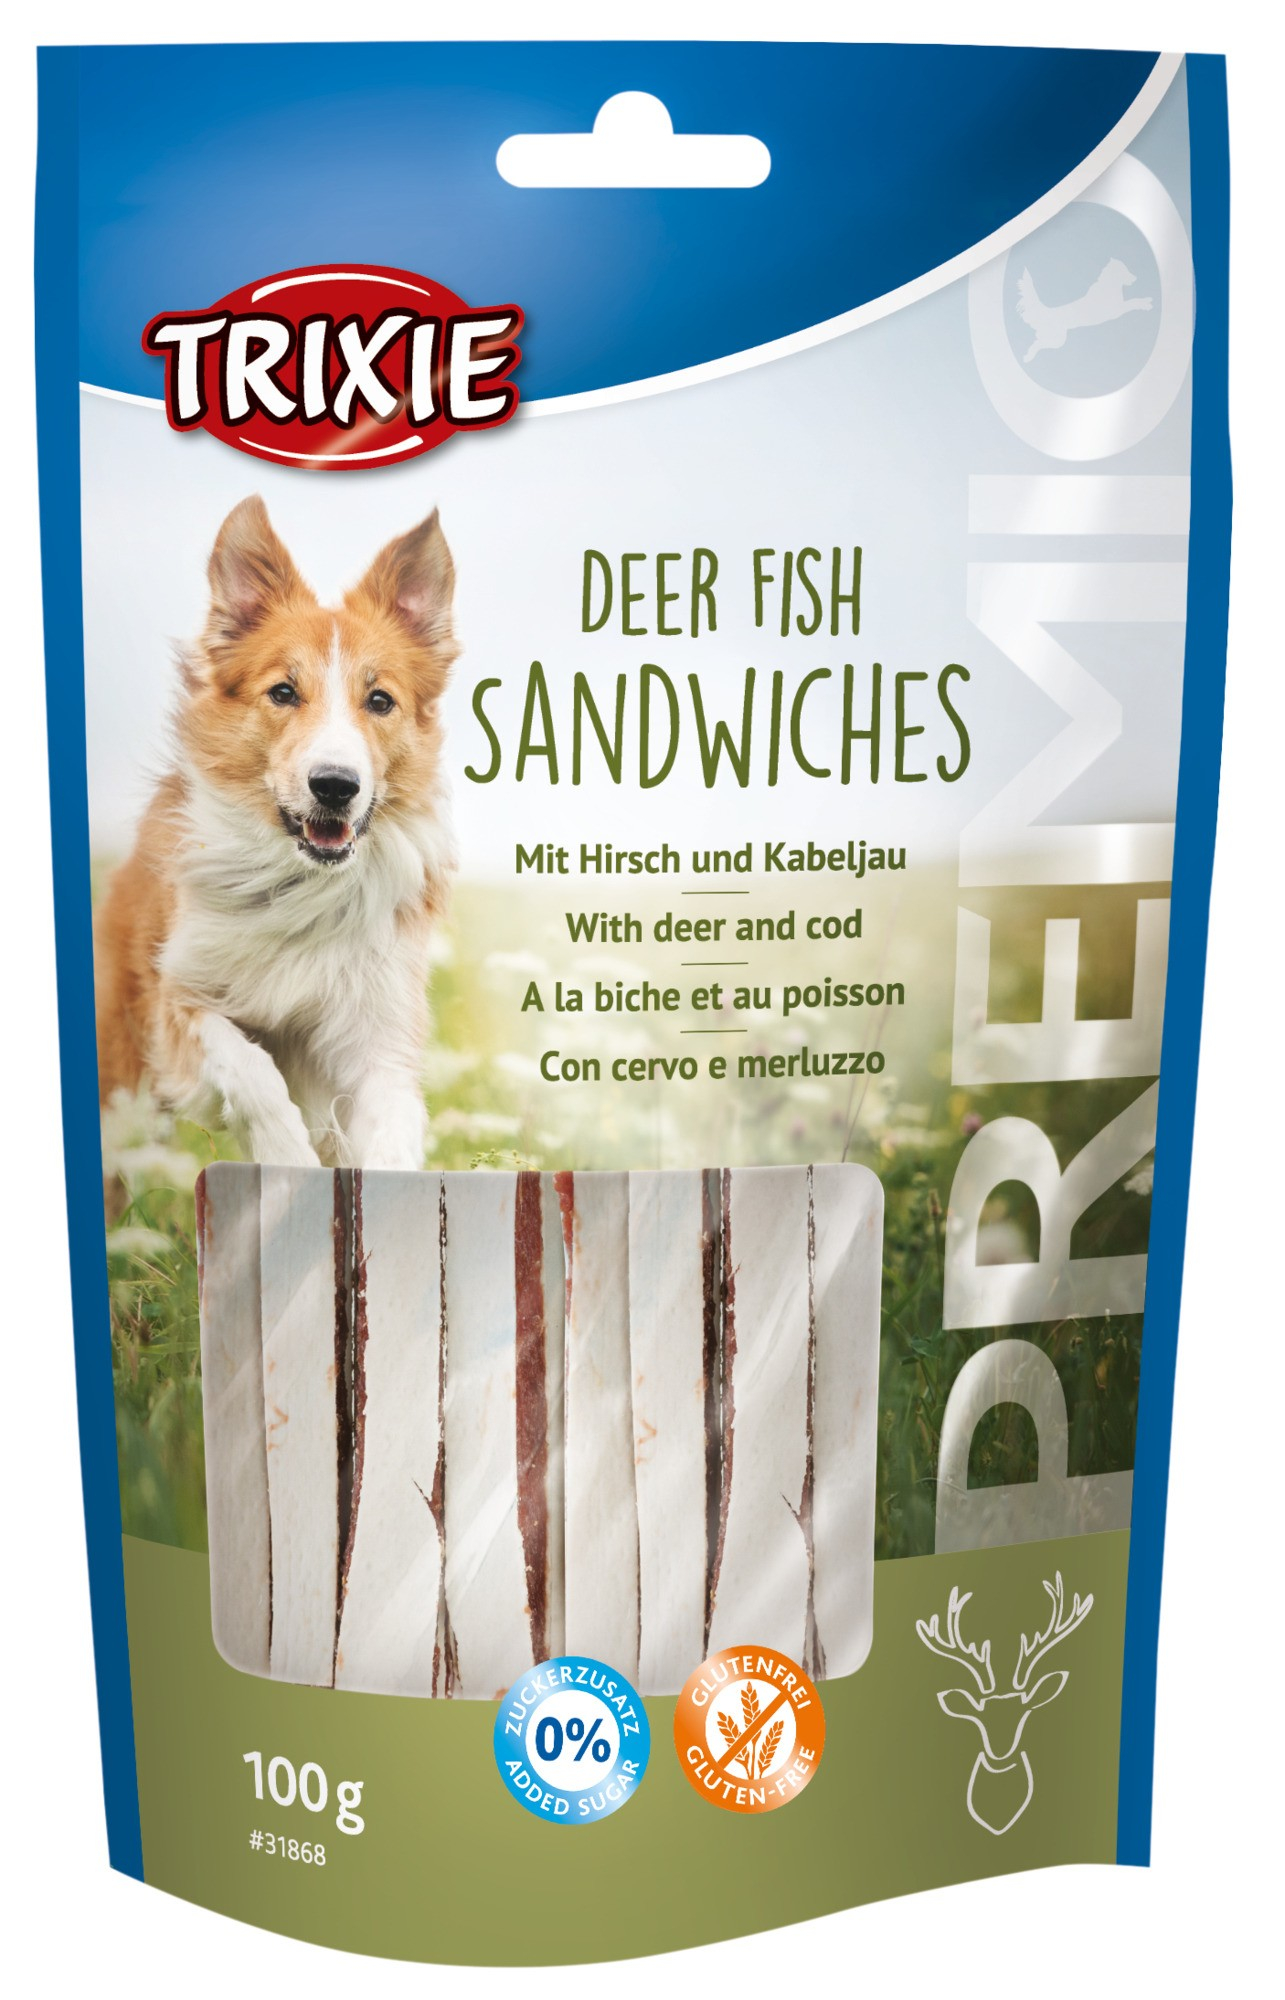 Deer Fish Sandwich Premio